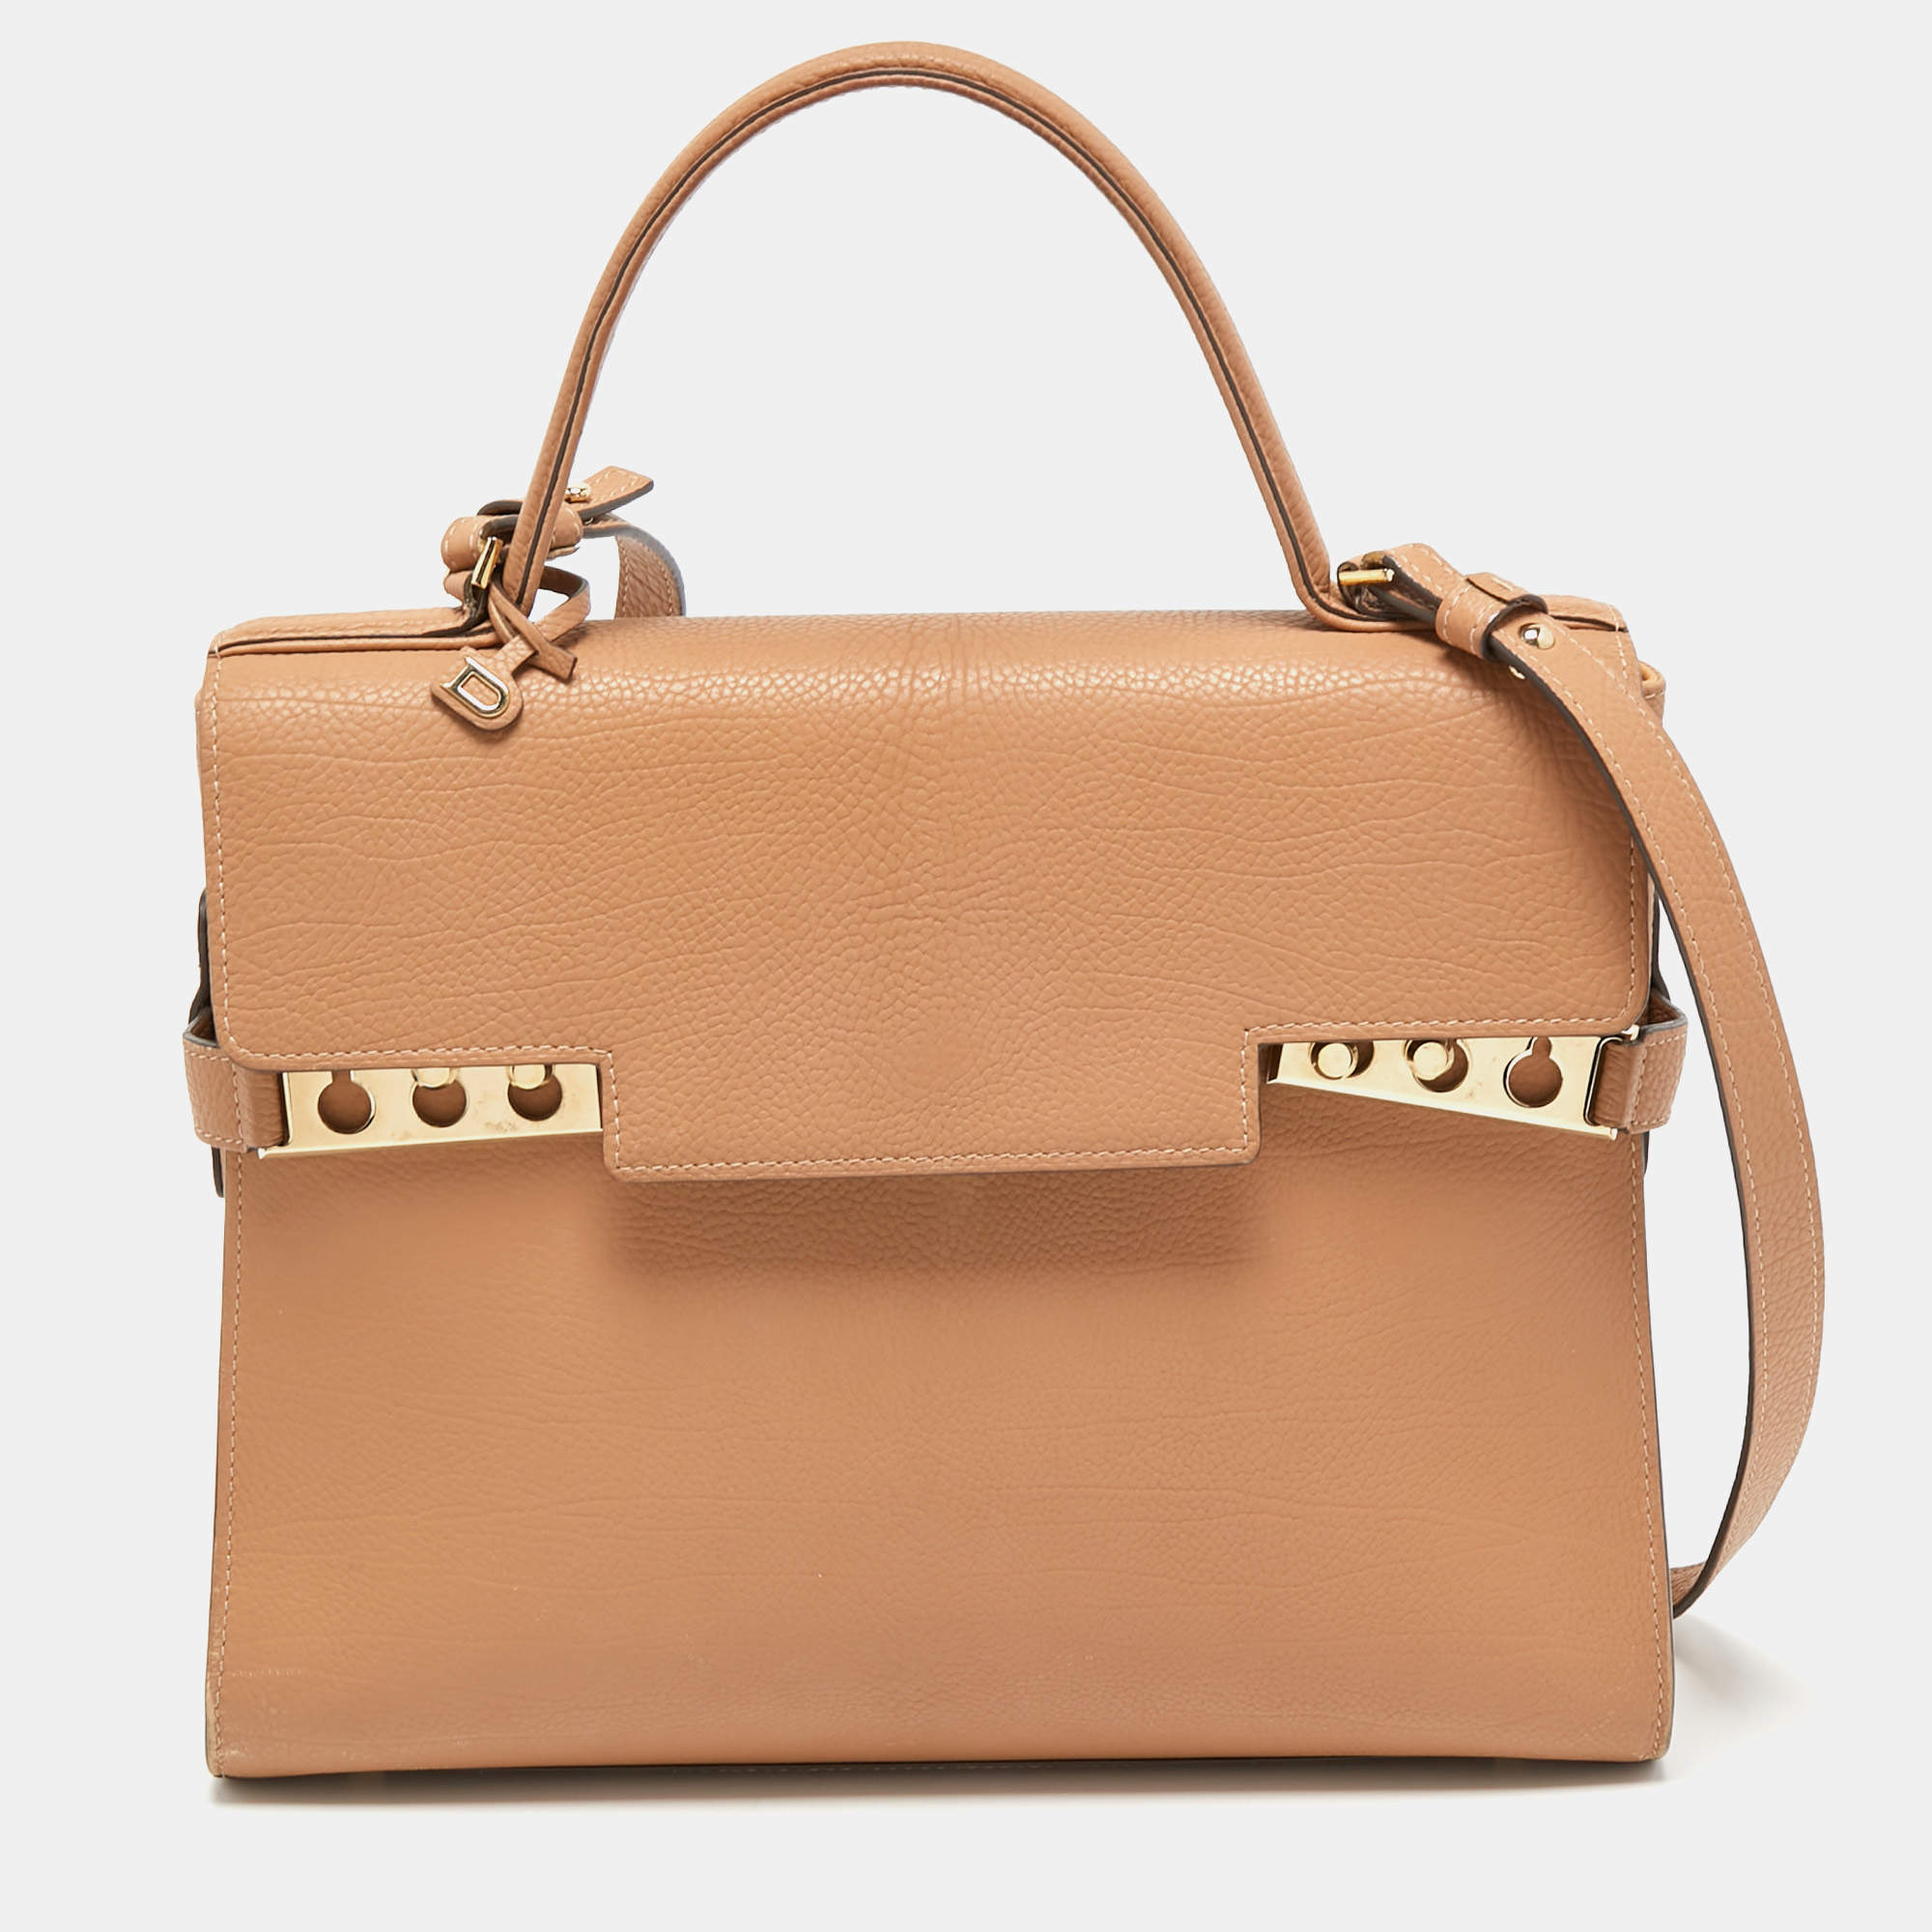 Delvaux Tempete Bag  Bags, Luxury handbags, Top handle bag